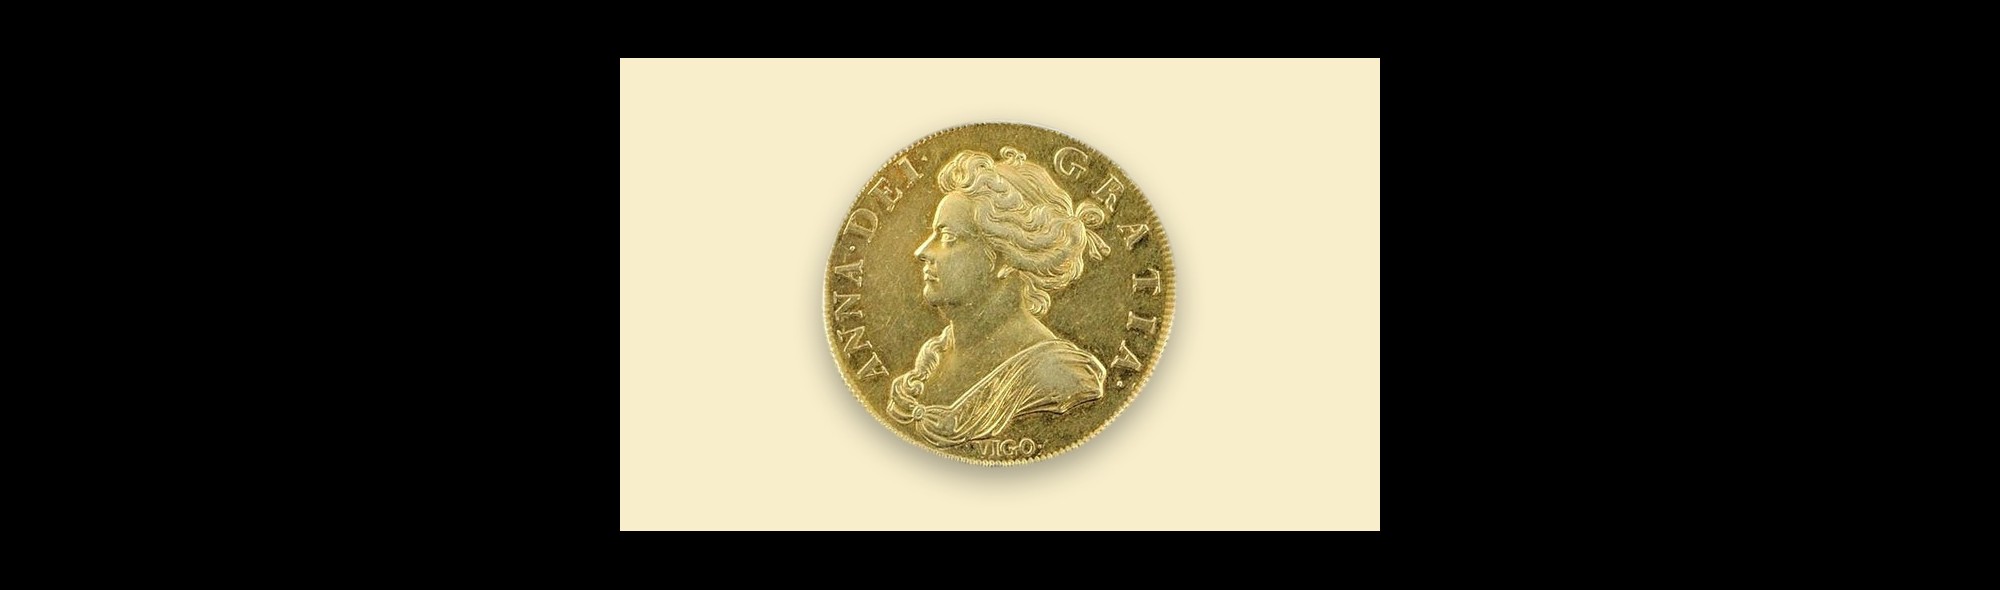 Queen Anne ‘Vigo’ Coin